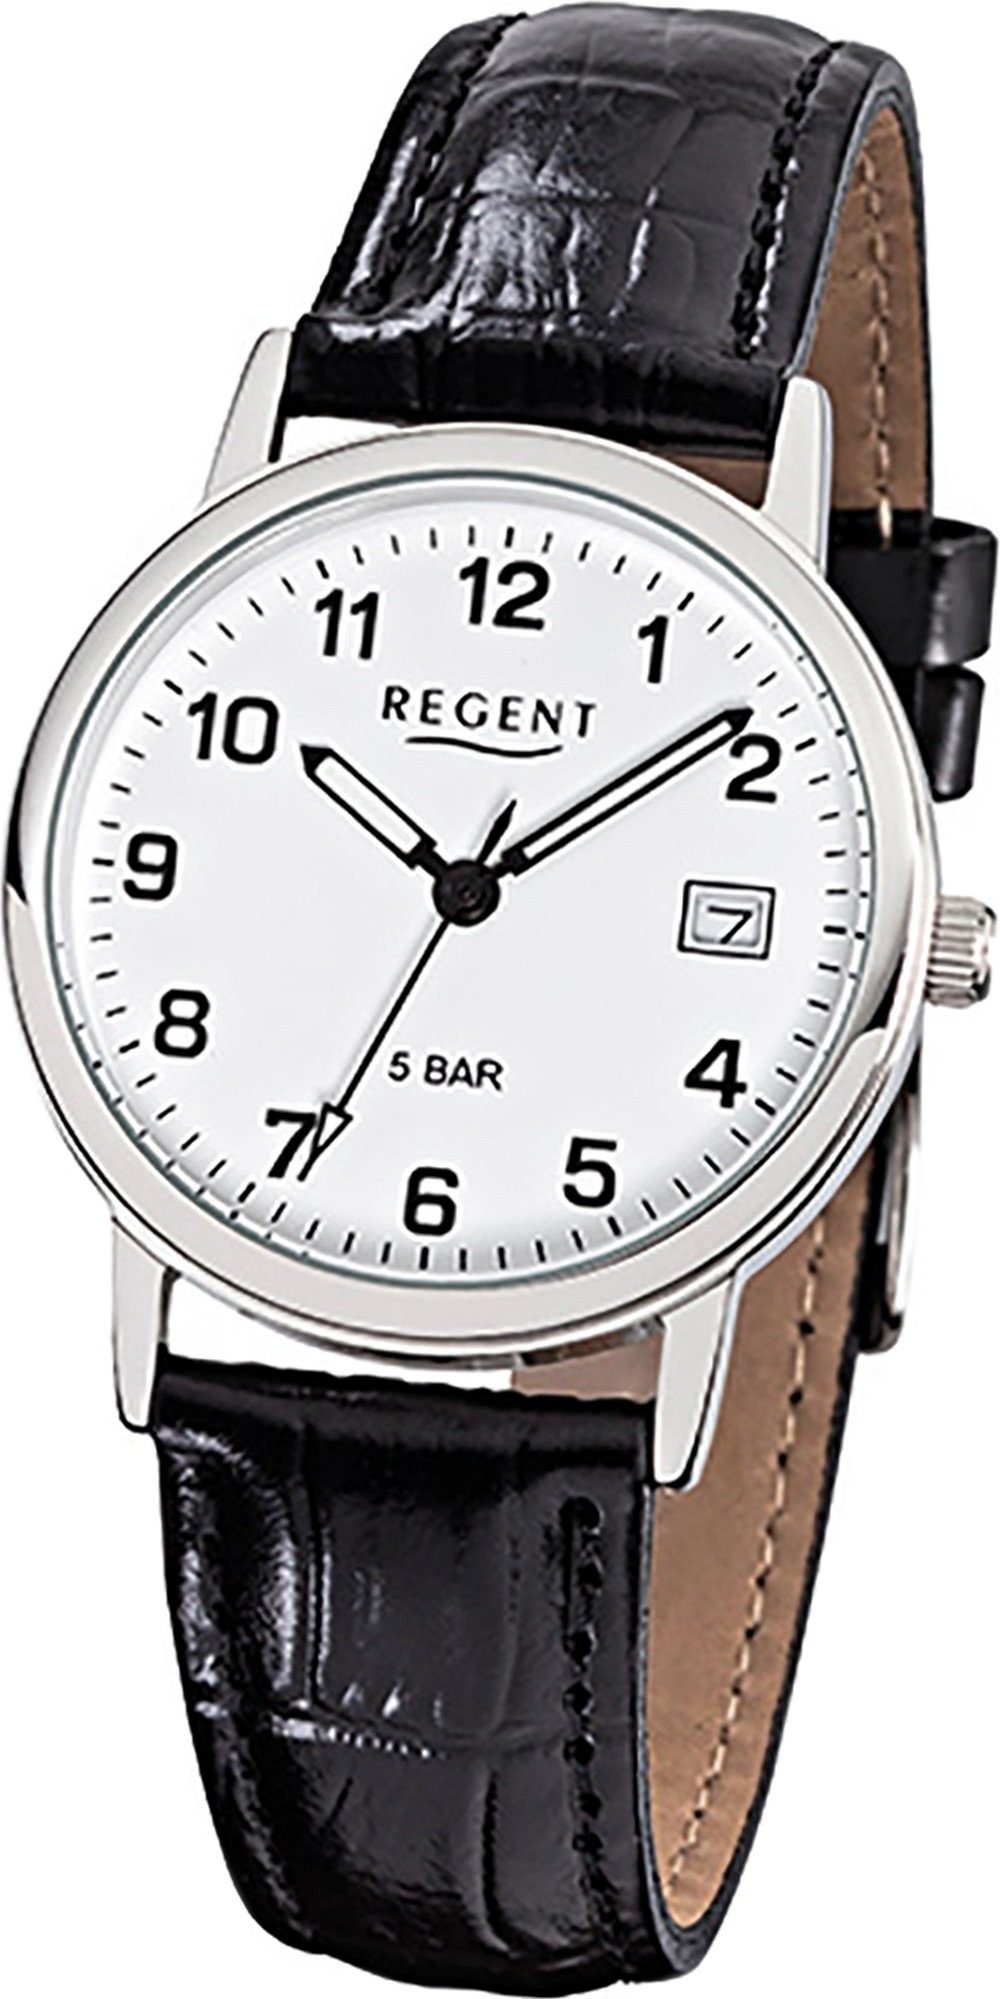 Regent Quarzuhr rundes Quarzuhr, 34mm) Gehäuse, Regent Herren mittel Leder (ca. Uhr Herrenuhr F-791 Lederarmband schwarz